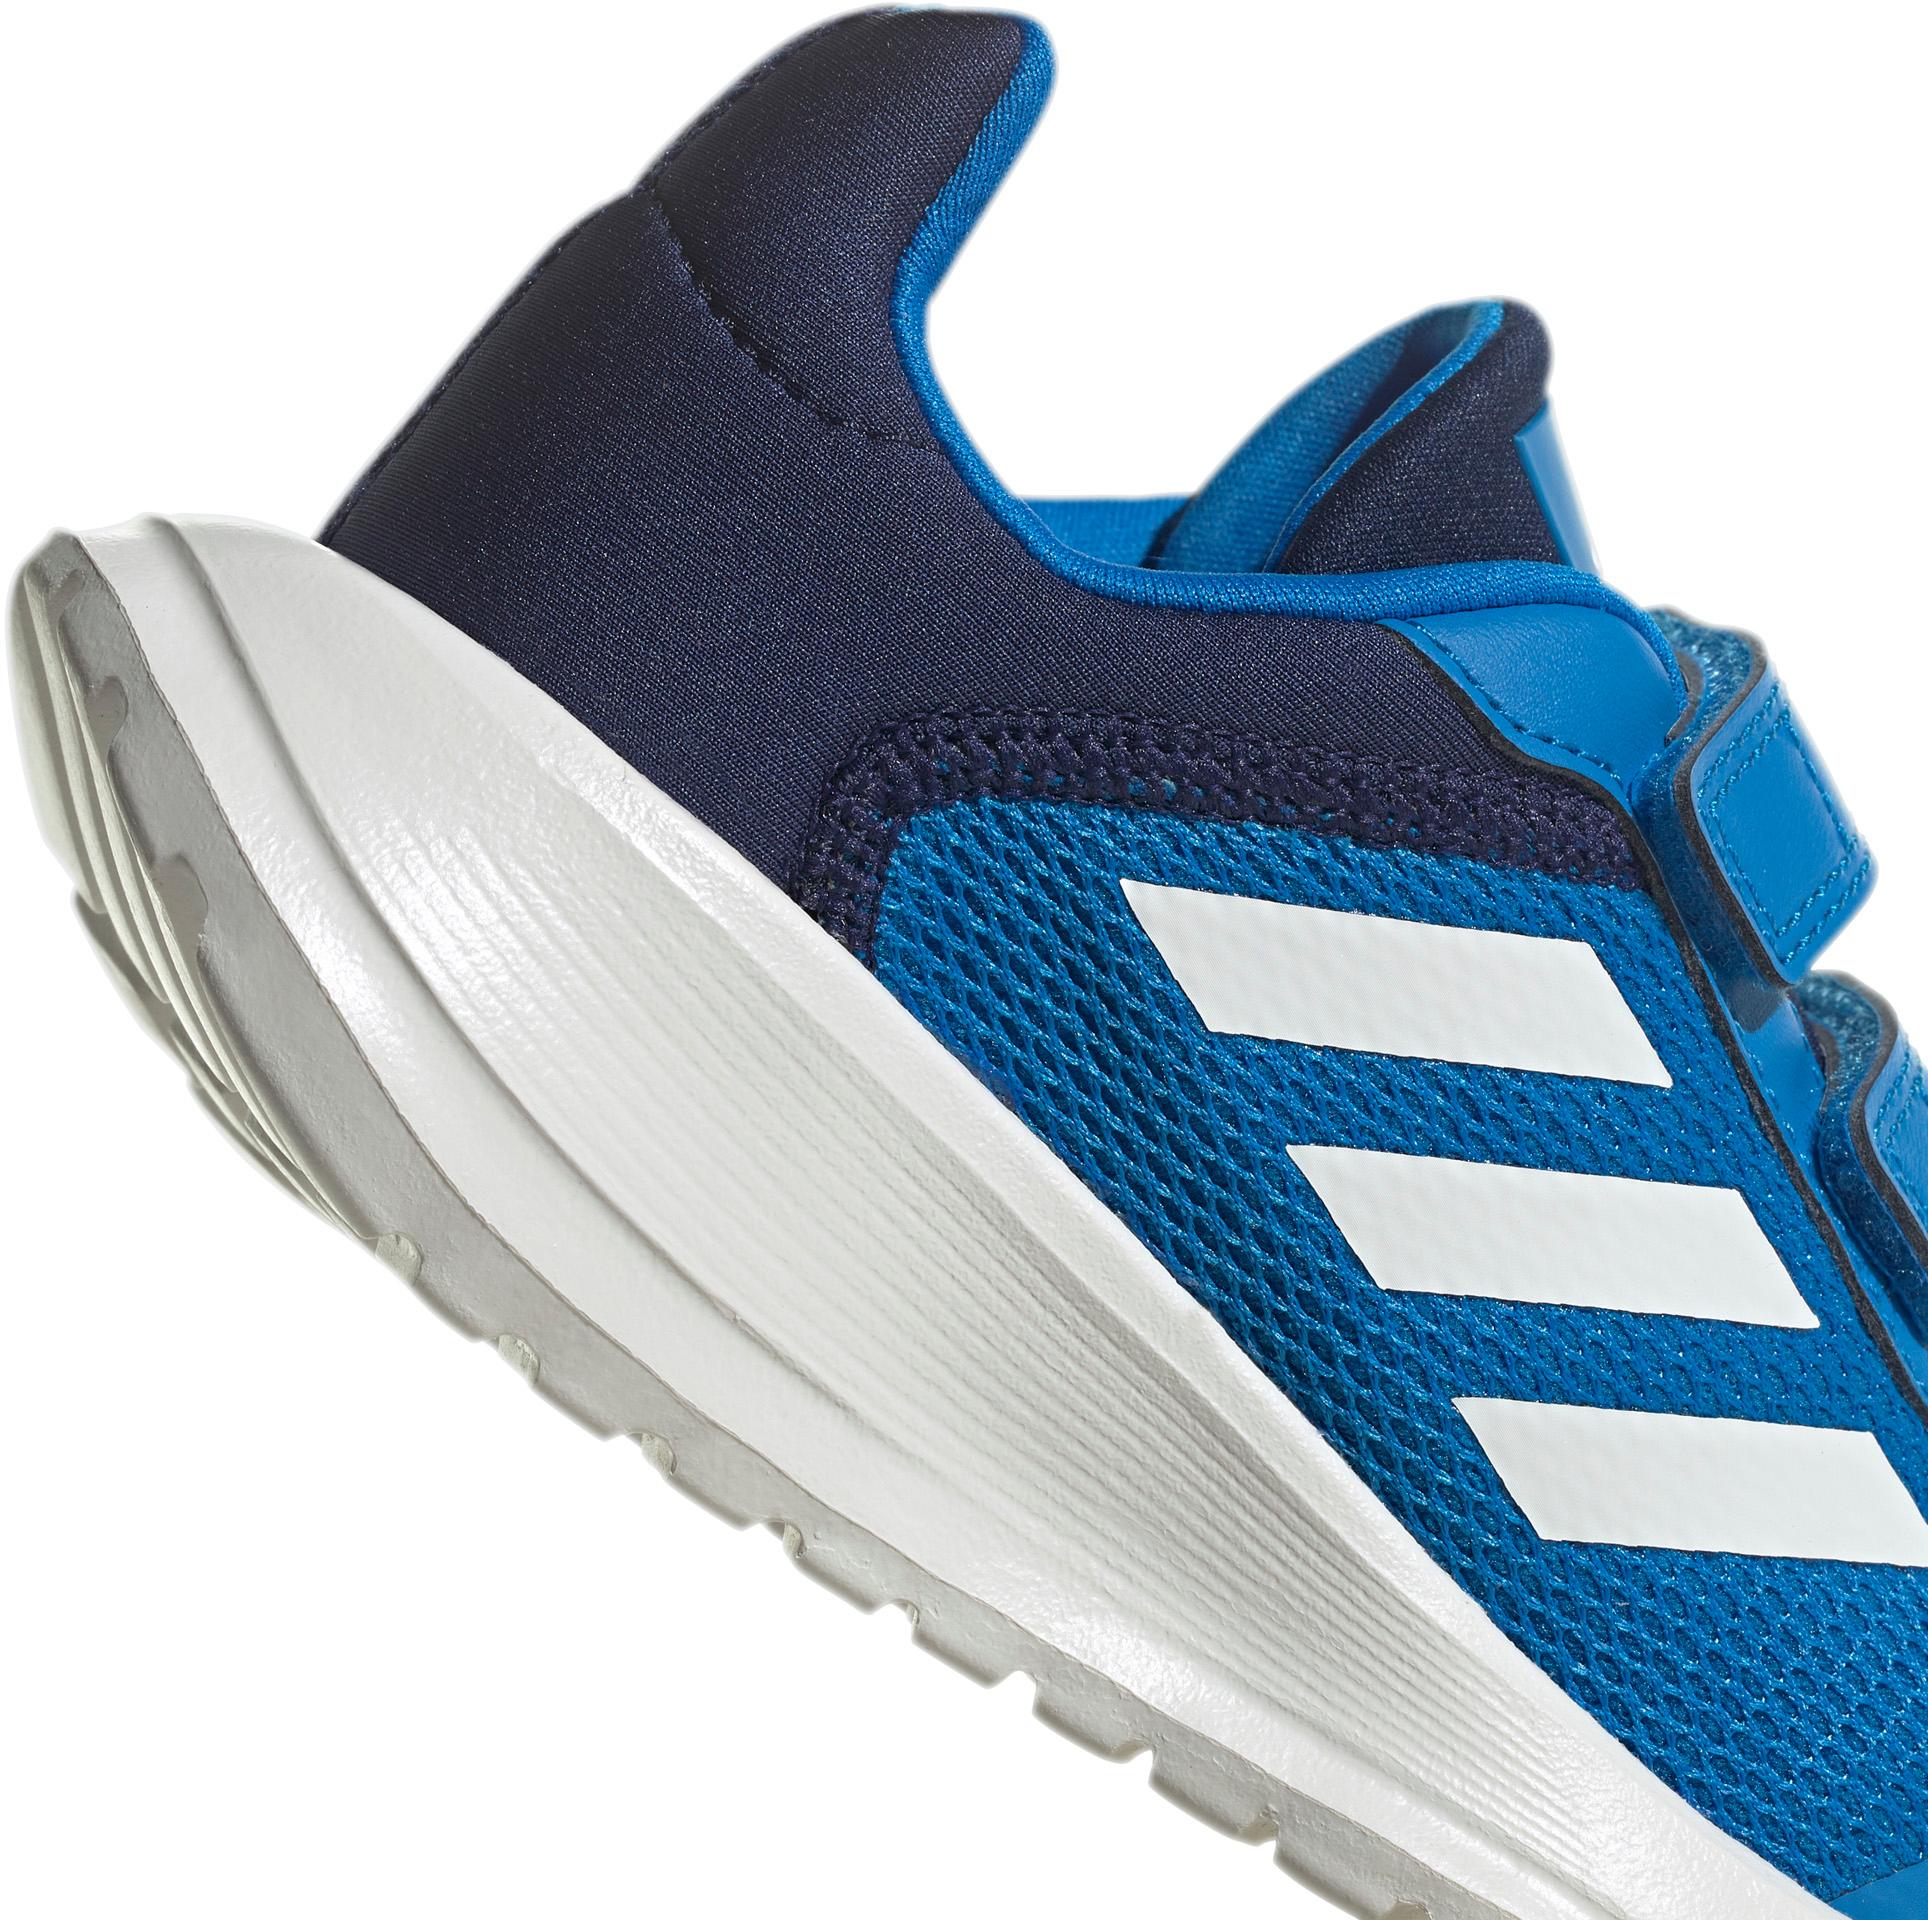 2.0 Freizeitschuhe Shop Adidas blue white-dark kaufen von Kinder RUN im TENSAUR blue SportScheck rush-core Online